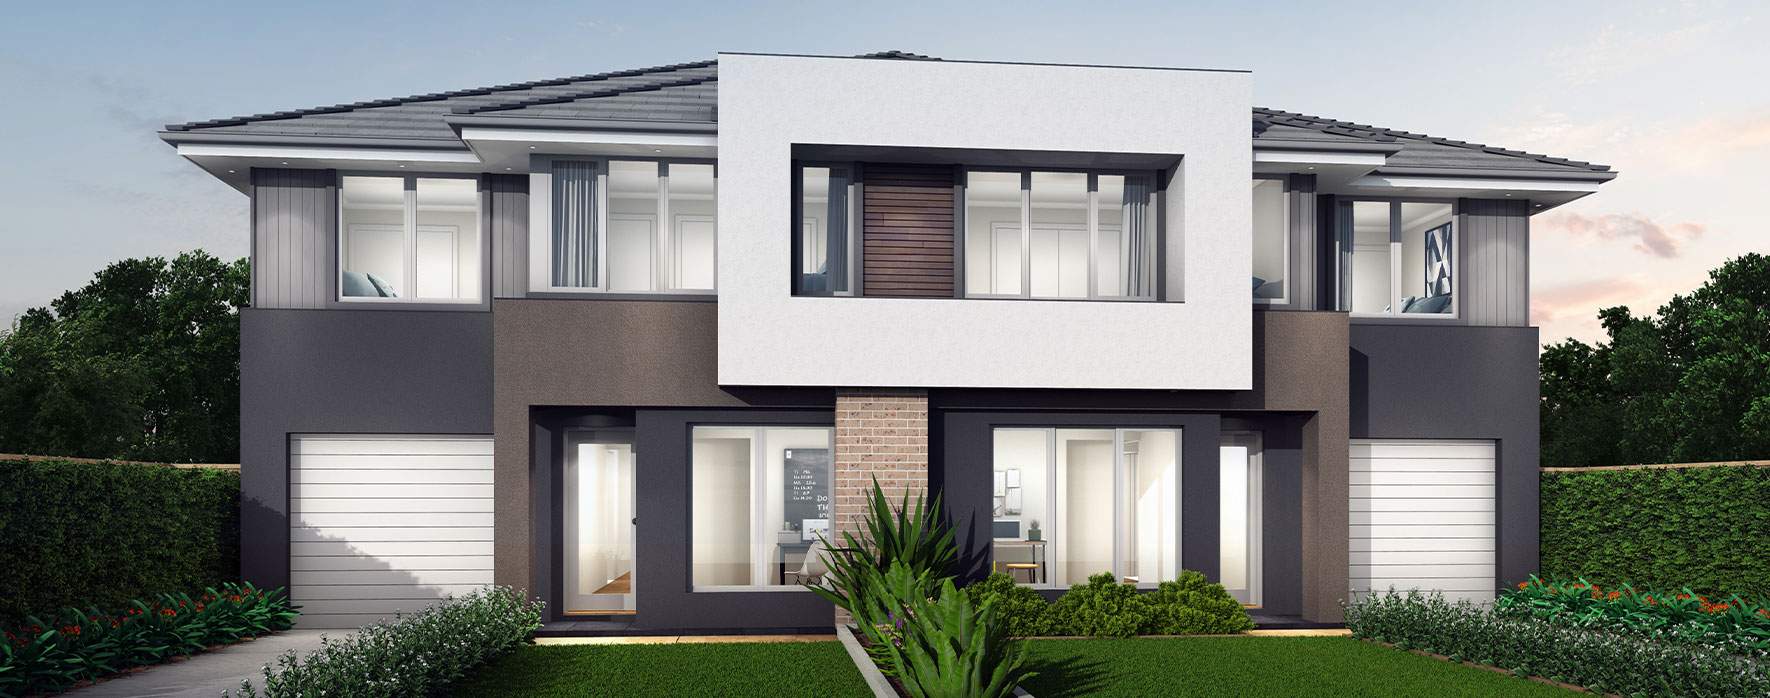 cleveland-duplex-house-design-contemporary